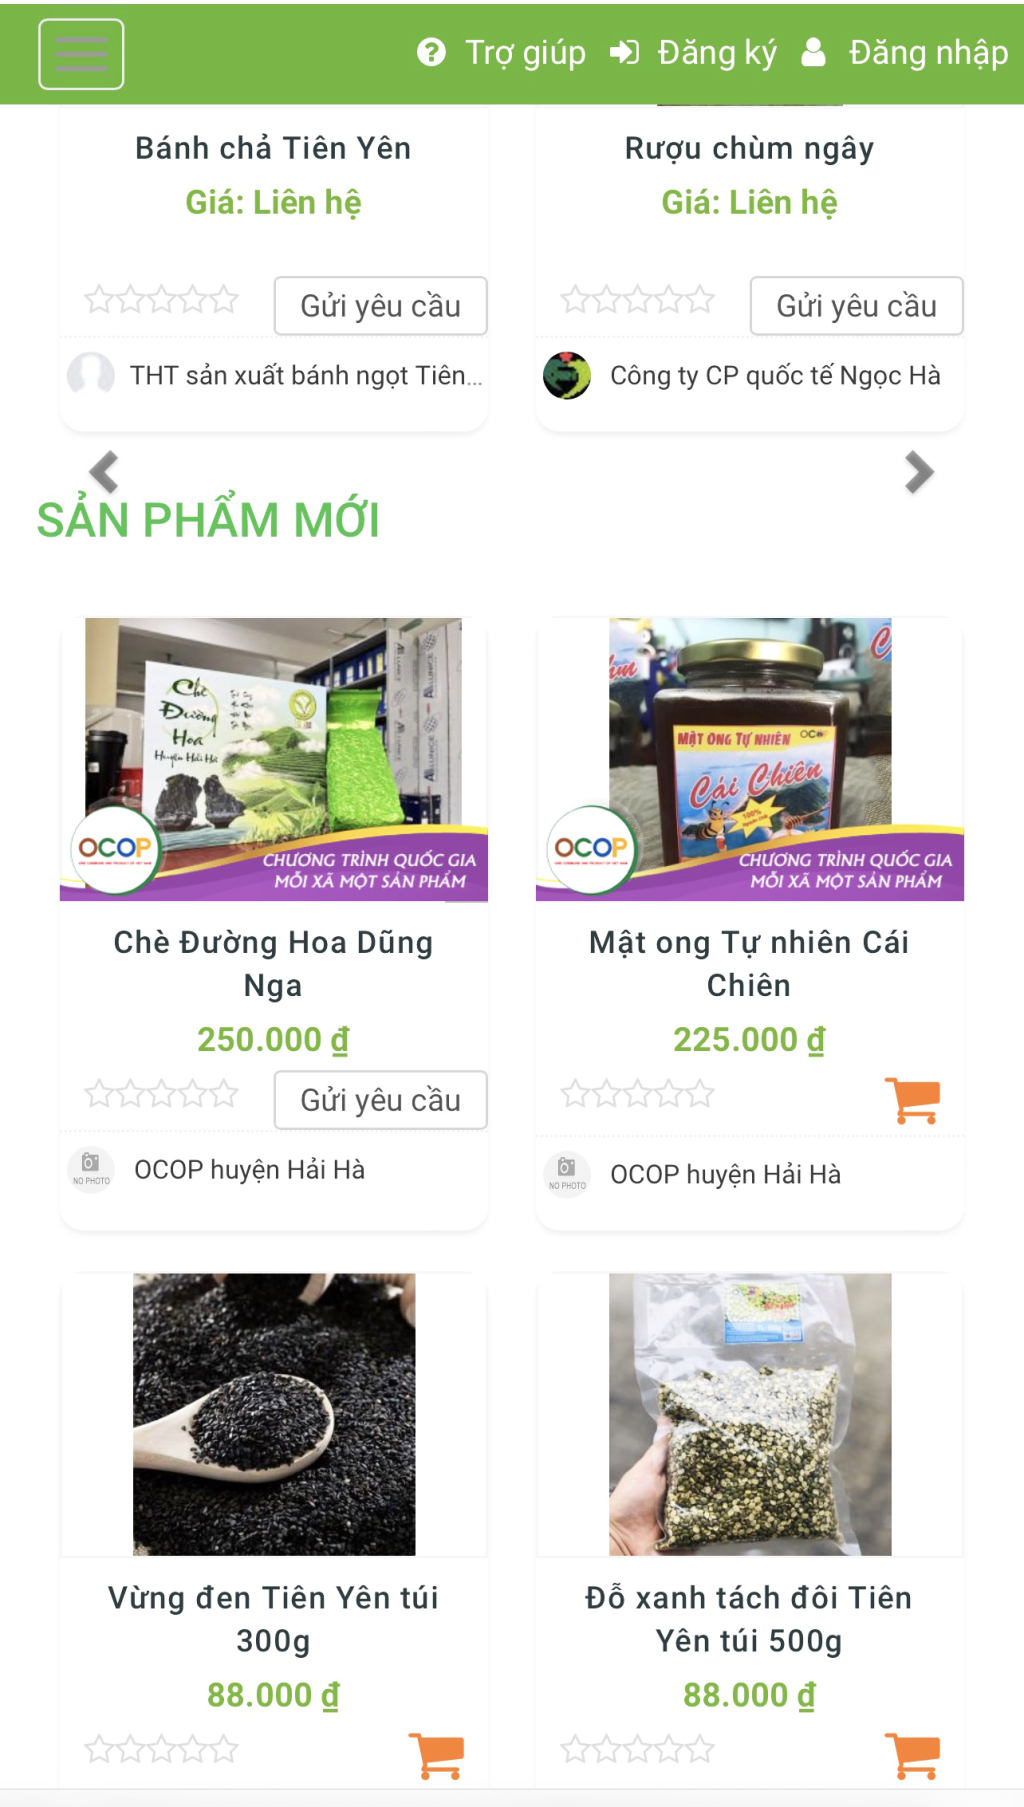 Sàn TMĐT OCOP Quảng Ninh (http://ocopquangninh.com.vn)